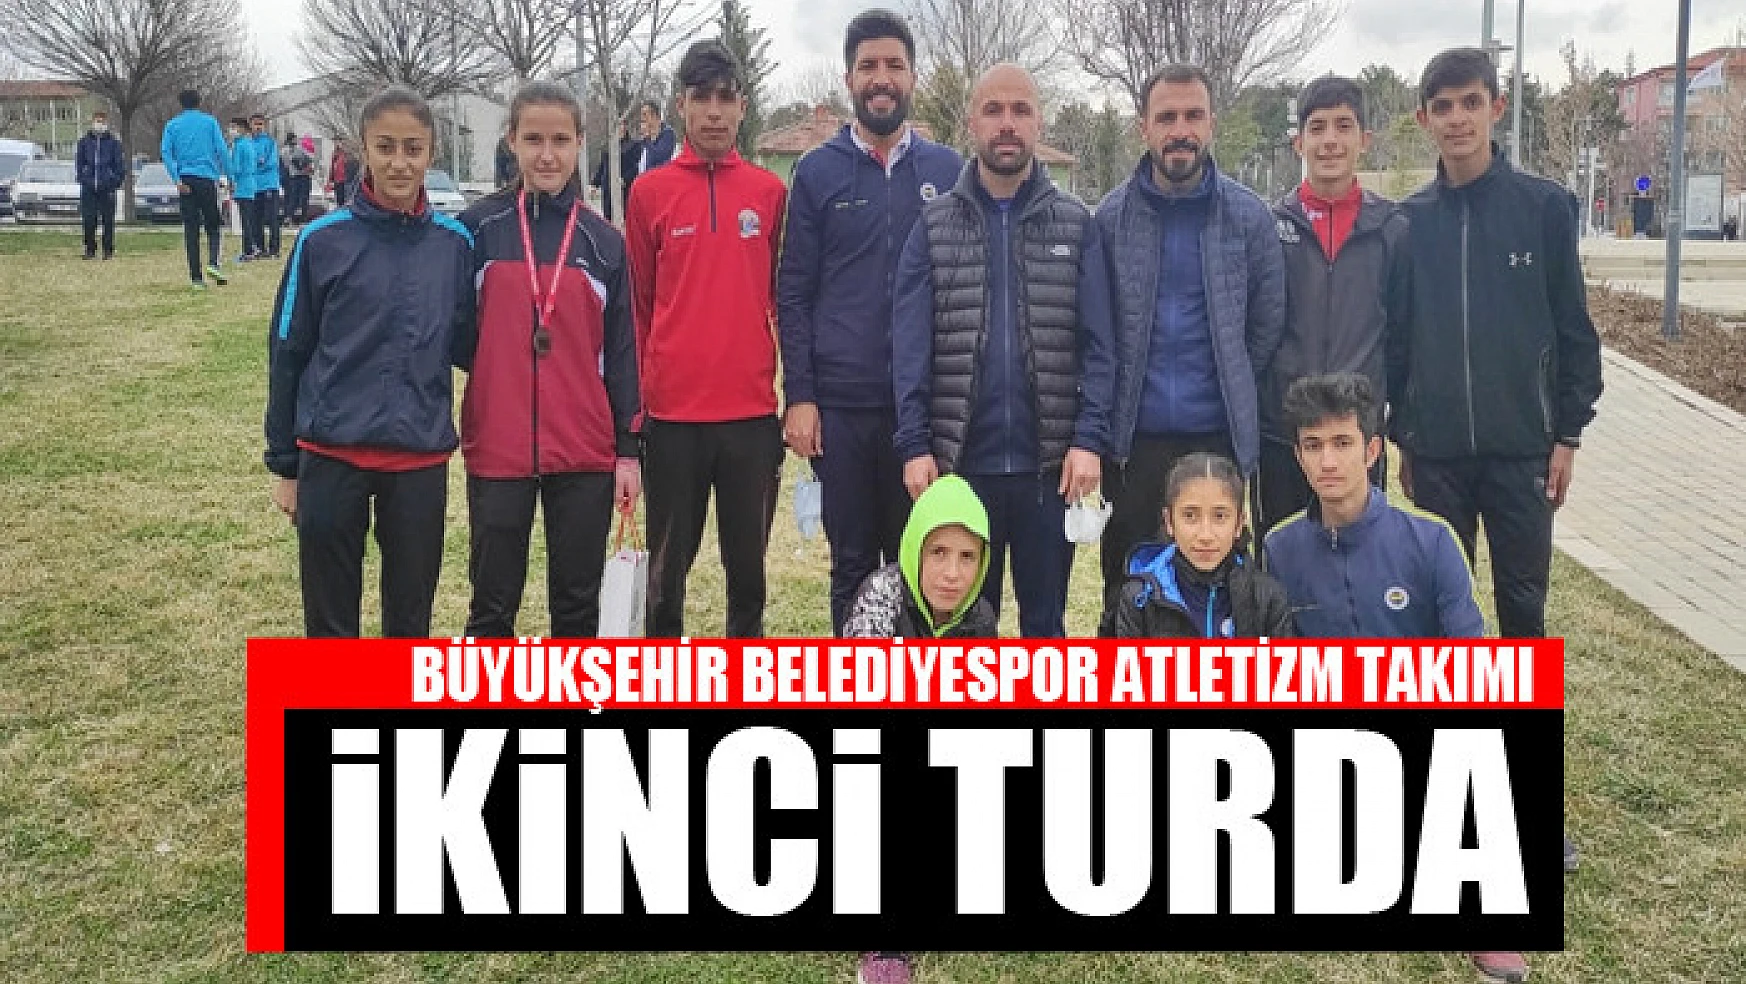 Büyükşehir Belediyespor Atletizm takımı ikinci turda